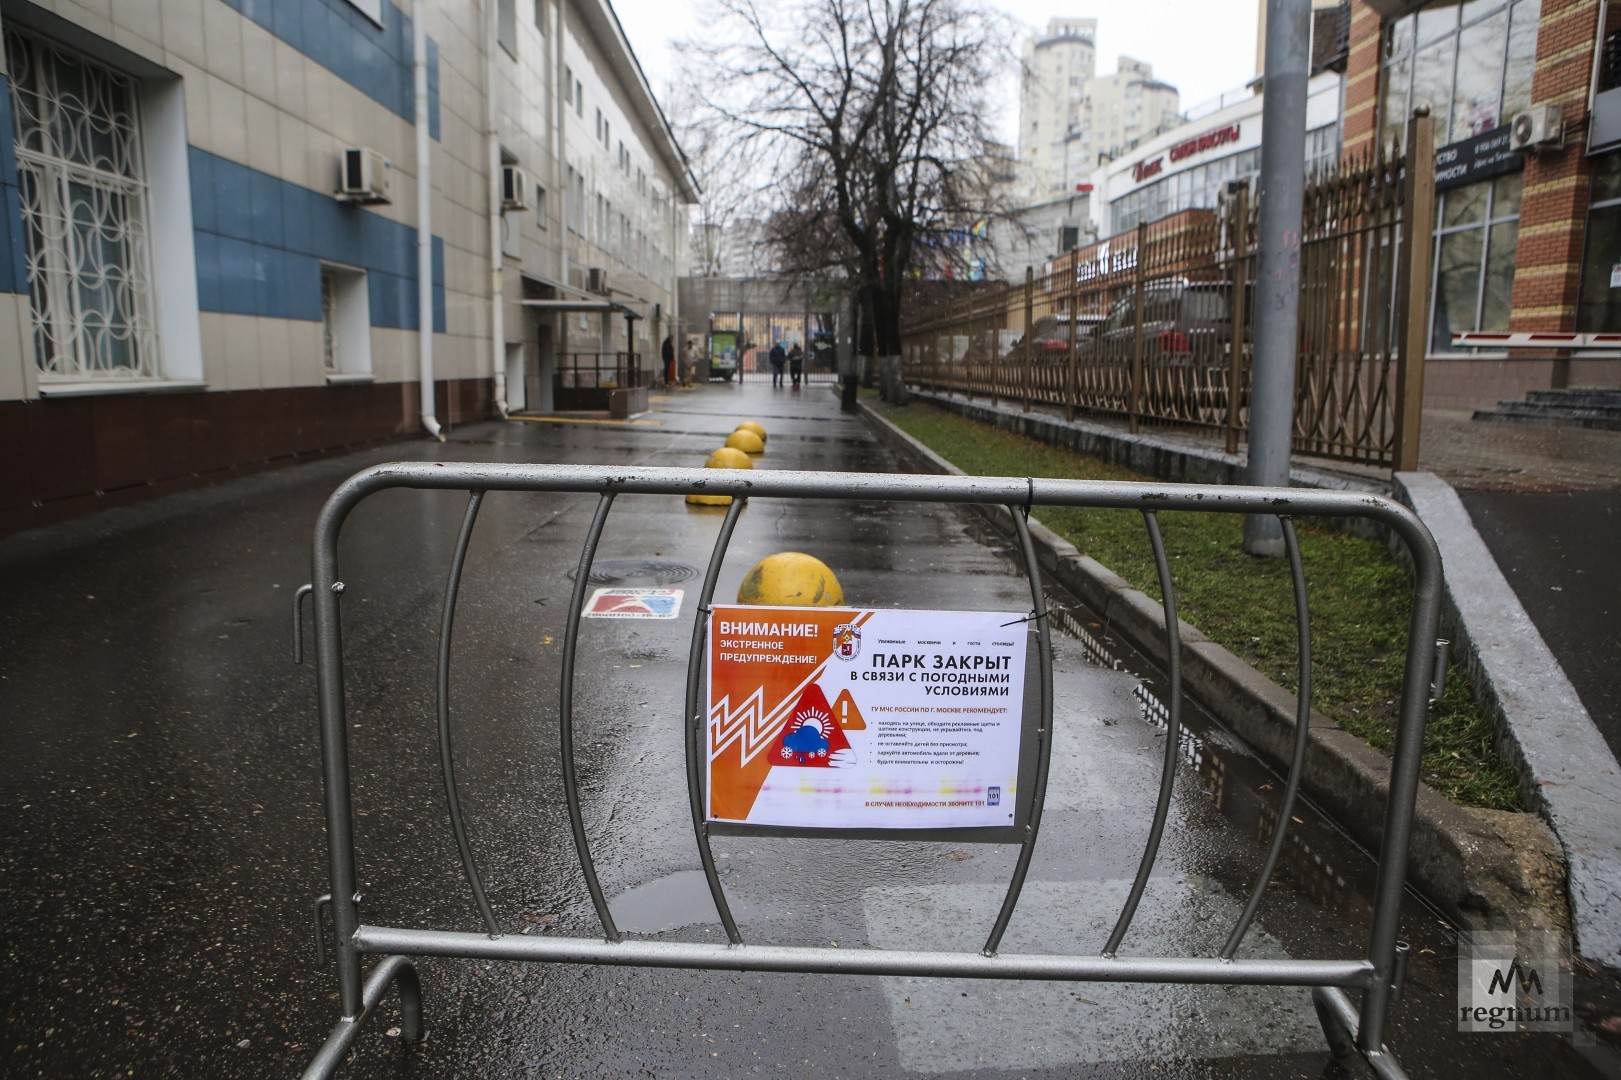 Таганский парк закрыт. Непогода в Москве